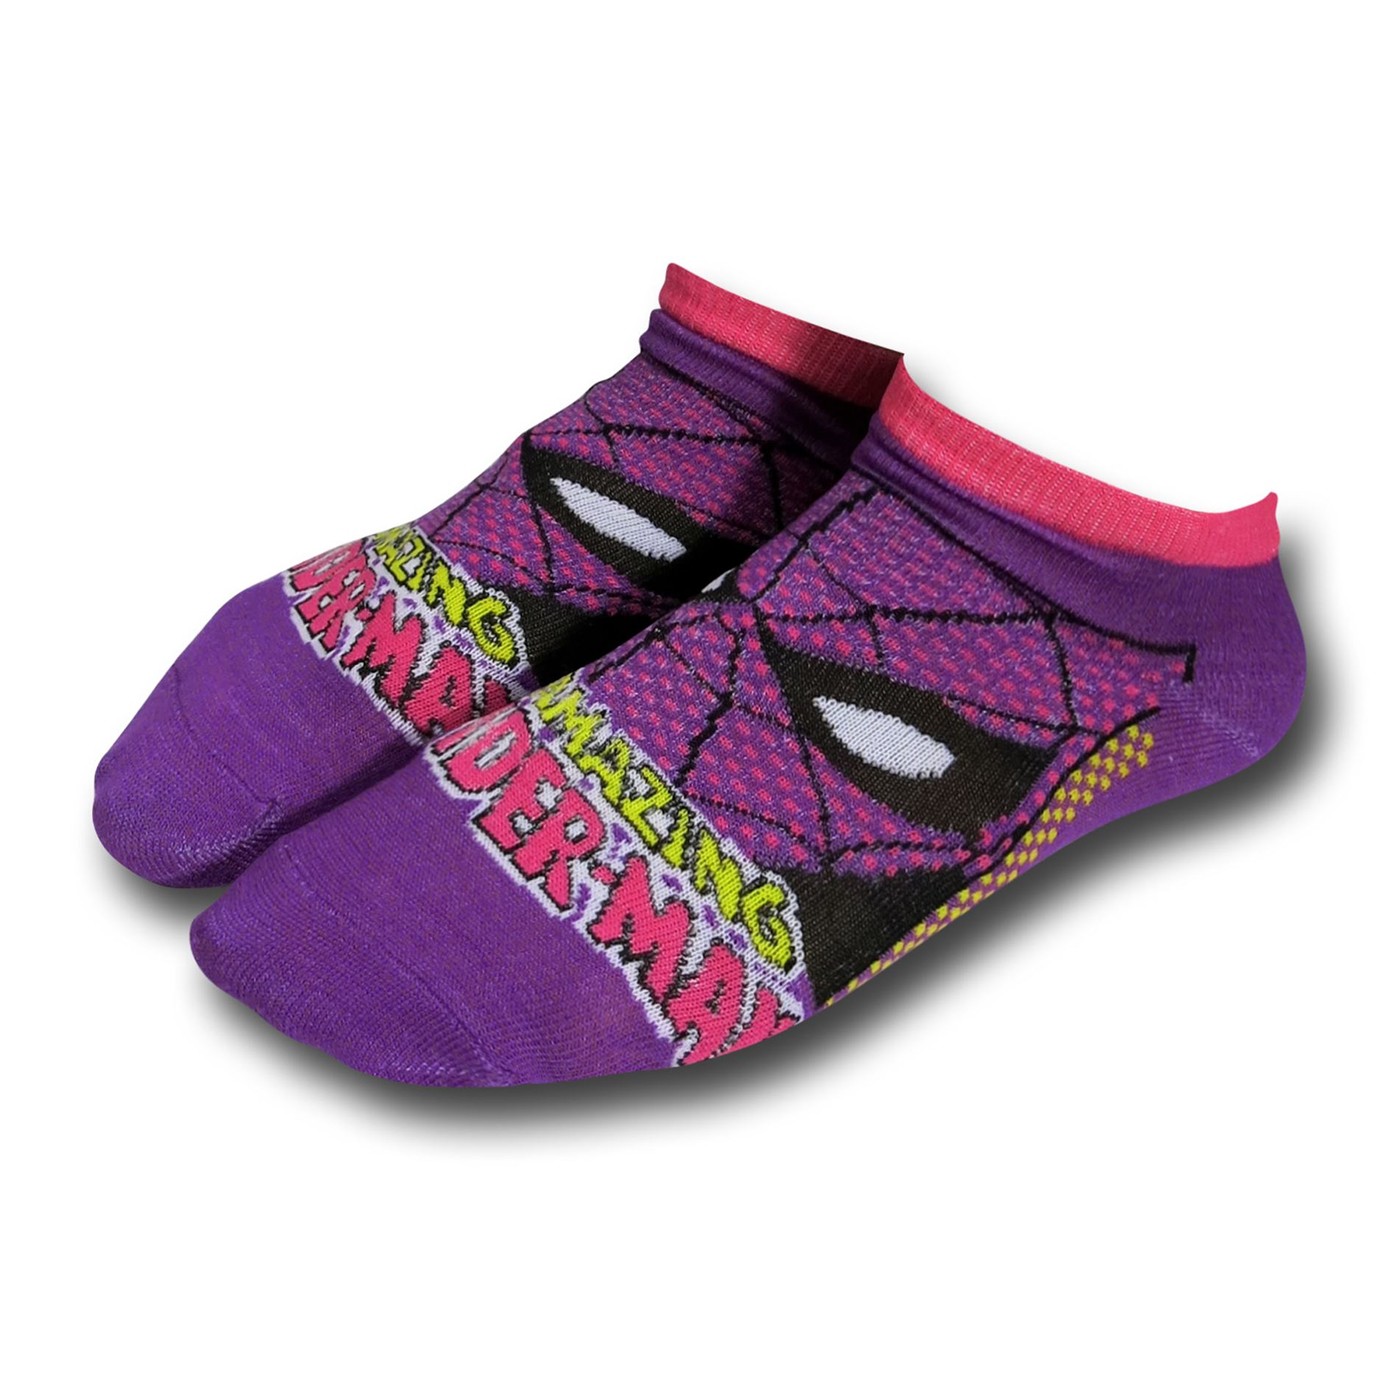 Marvel Heroes Women's Socks 5-Pack